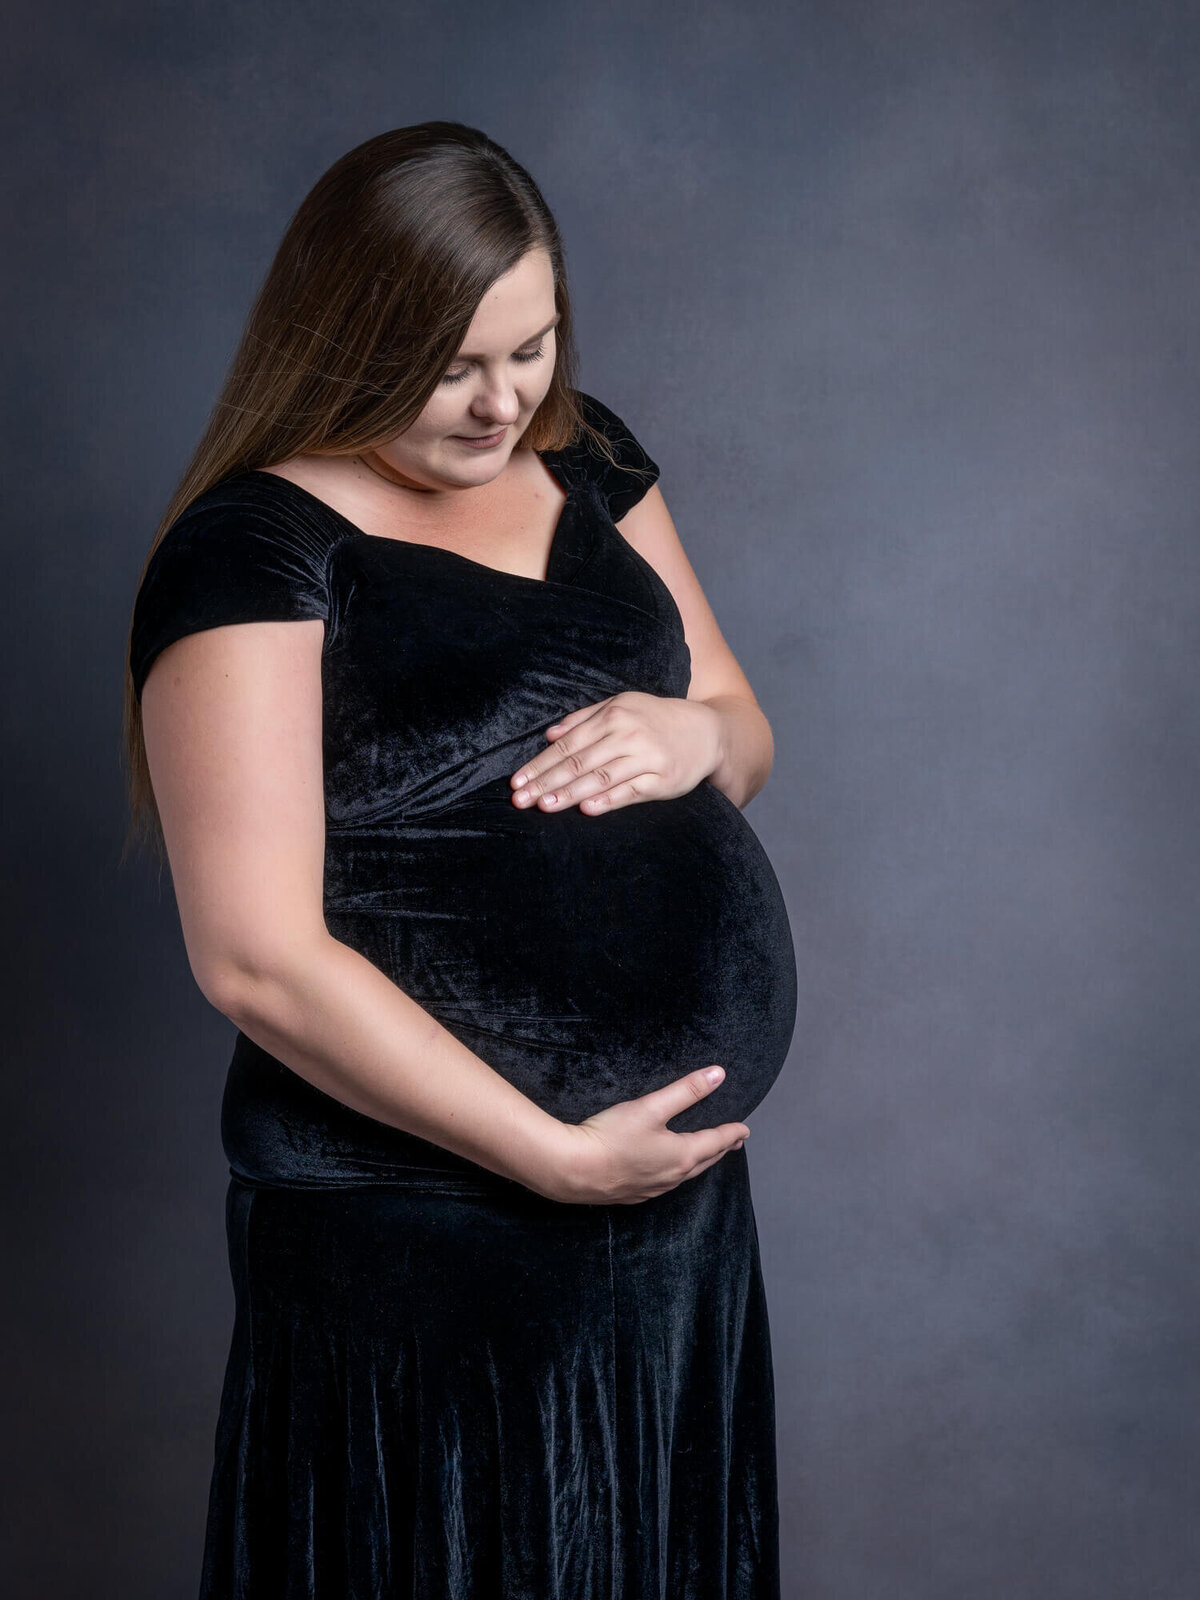 prescott-az-maternity-photographer-113